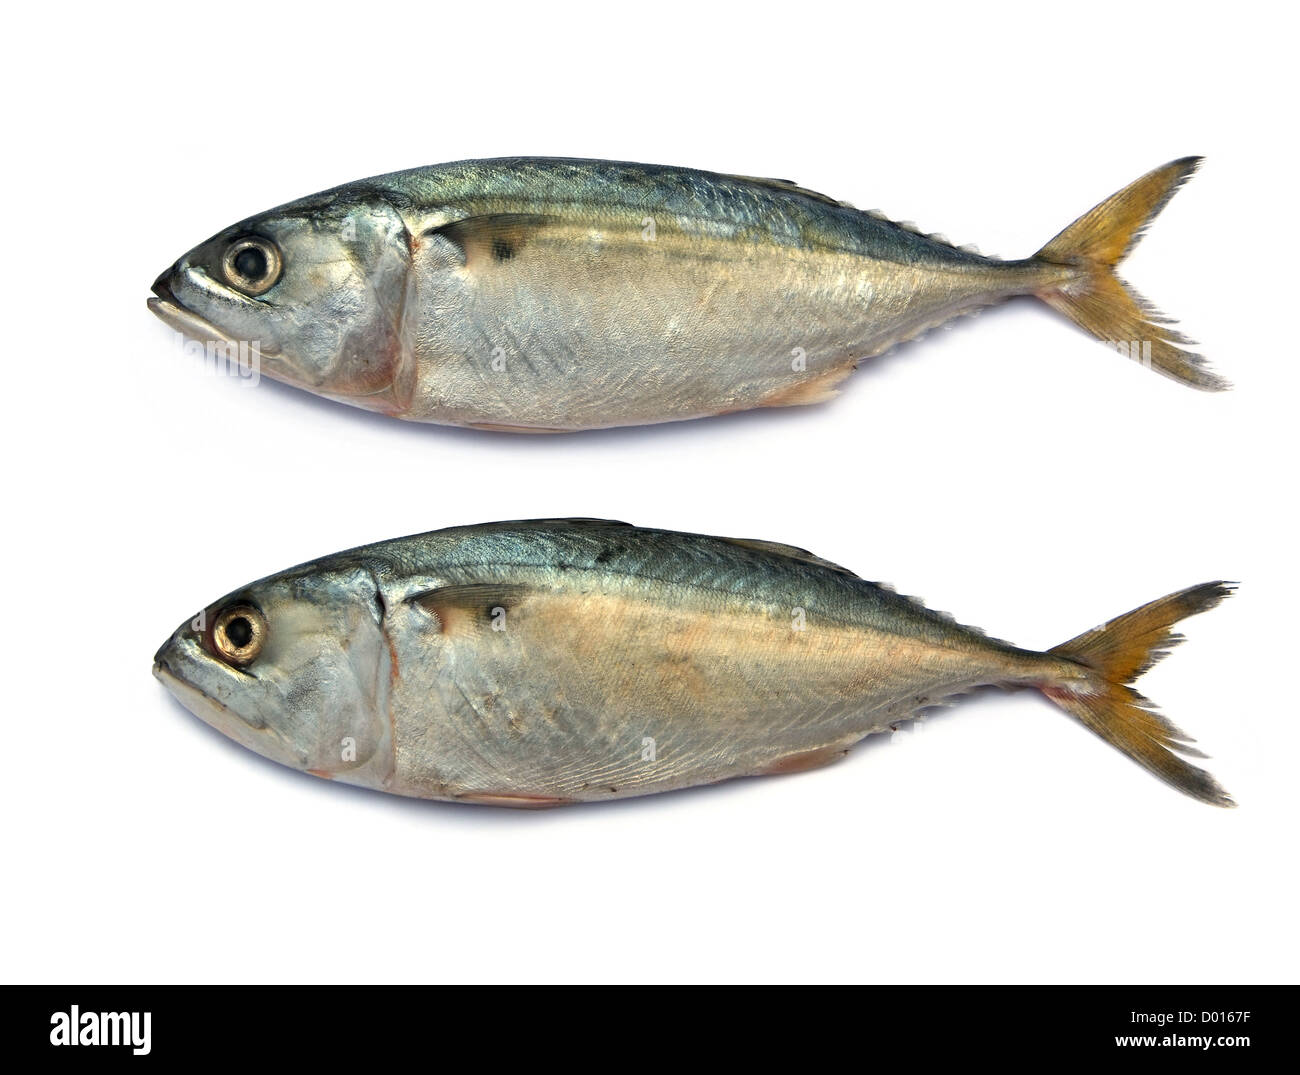 Fresh mackerel fish isolated on the white background Stock Photo